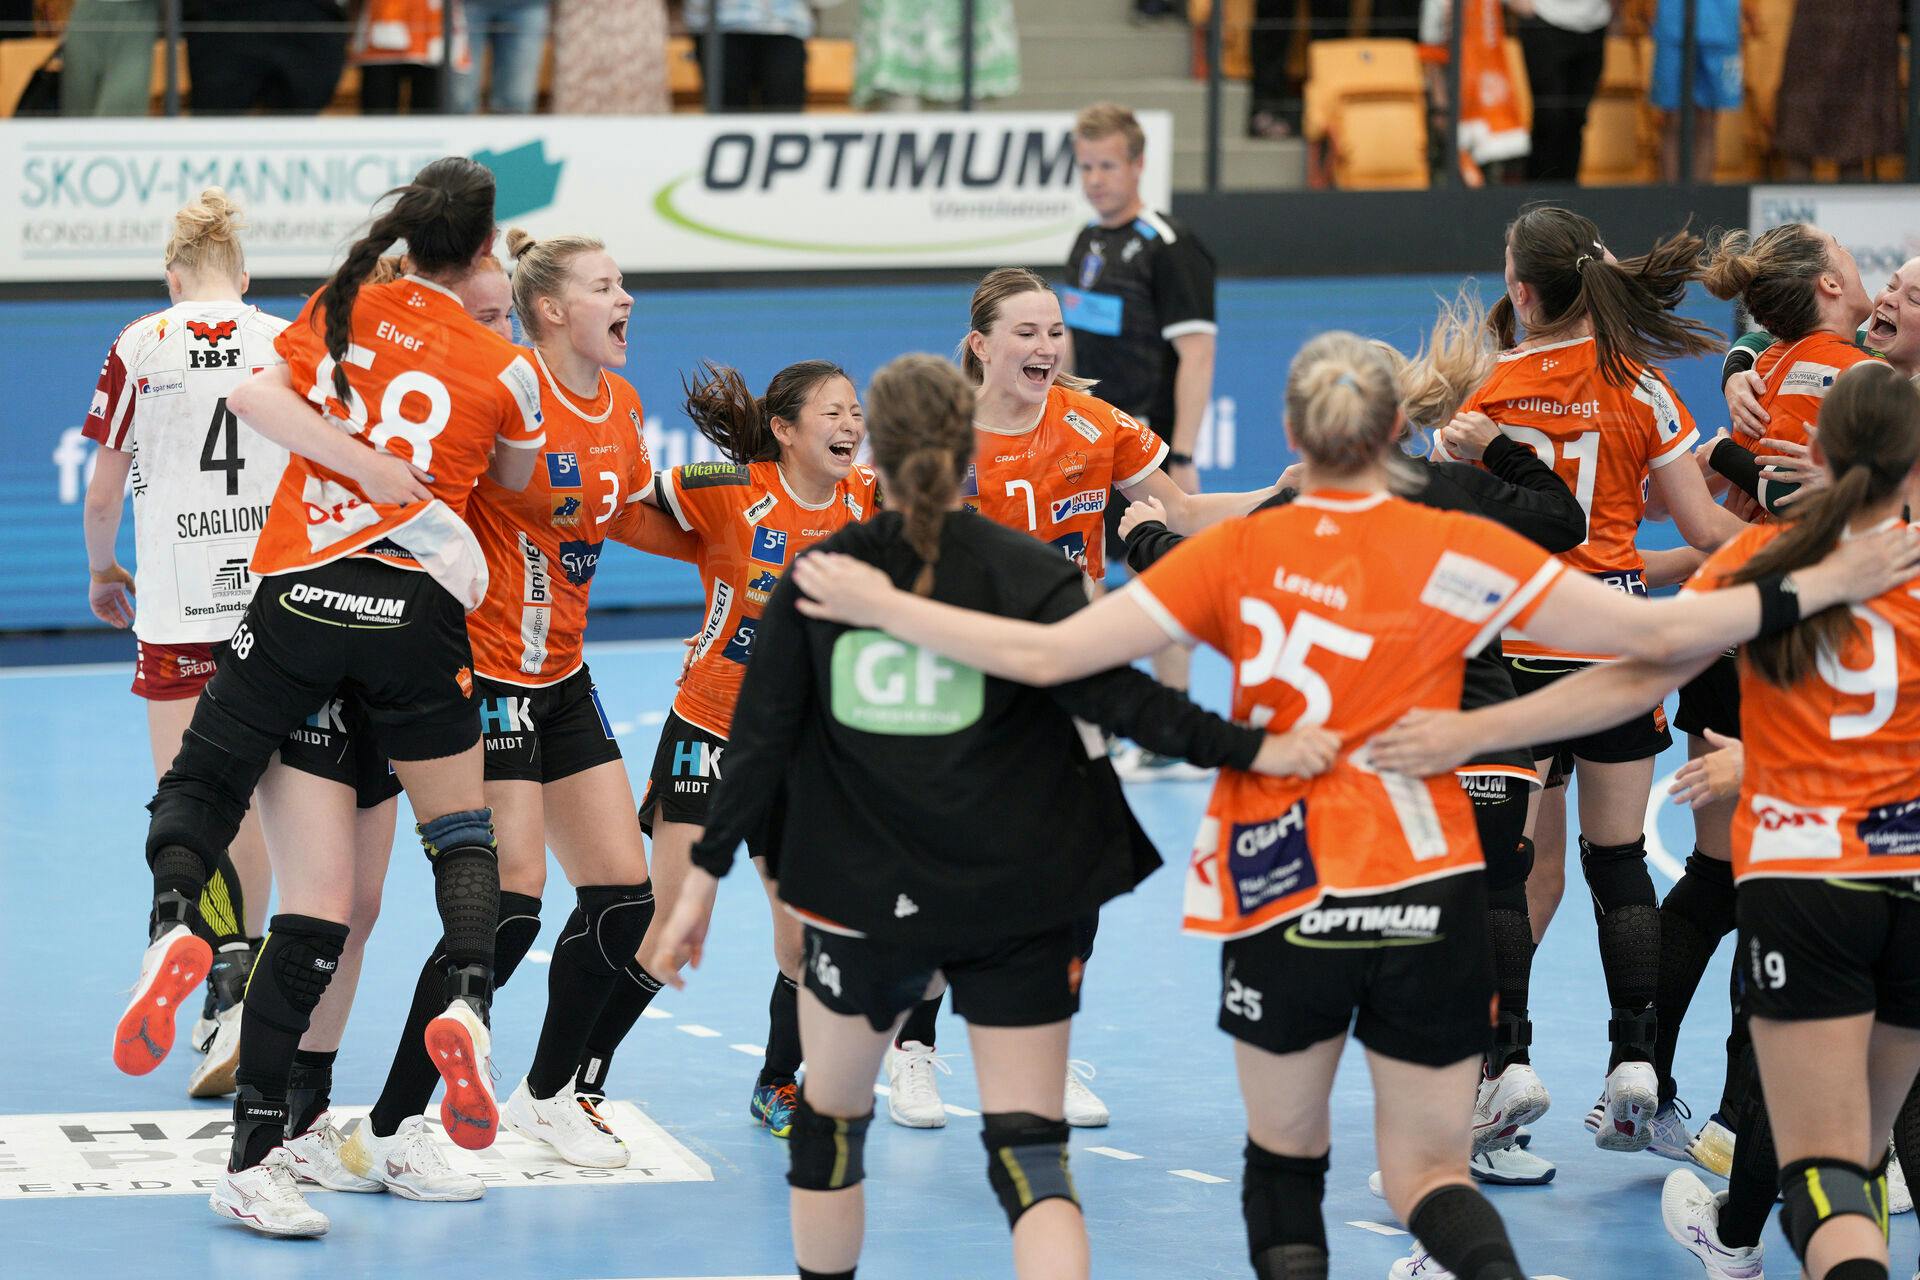 Glade Odense-spillere efter semifinalen i kvindehåndboldkampen mellem Odense Håndbold og Ikast Håndbold i Odense.